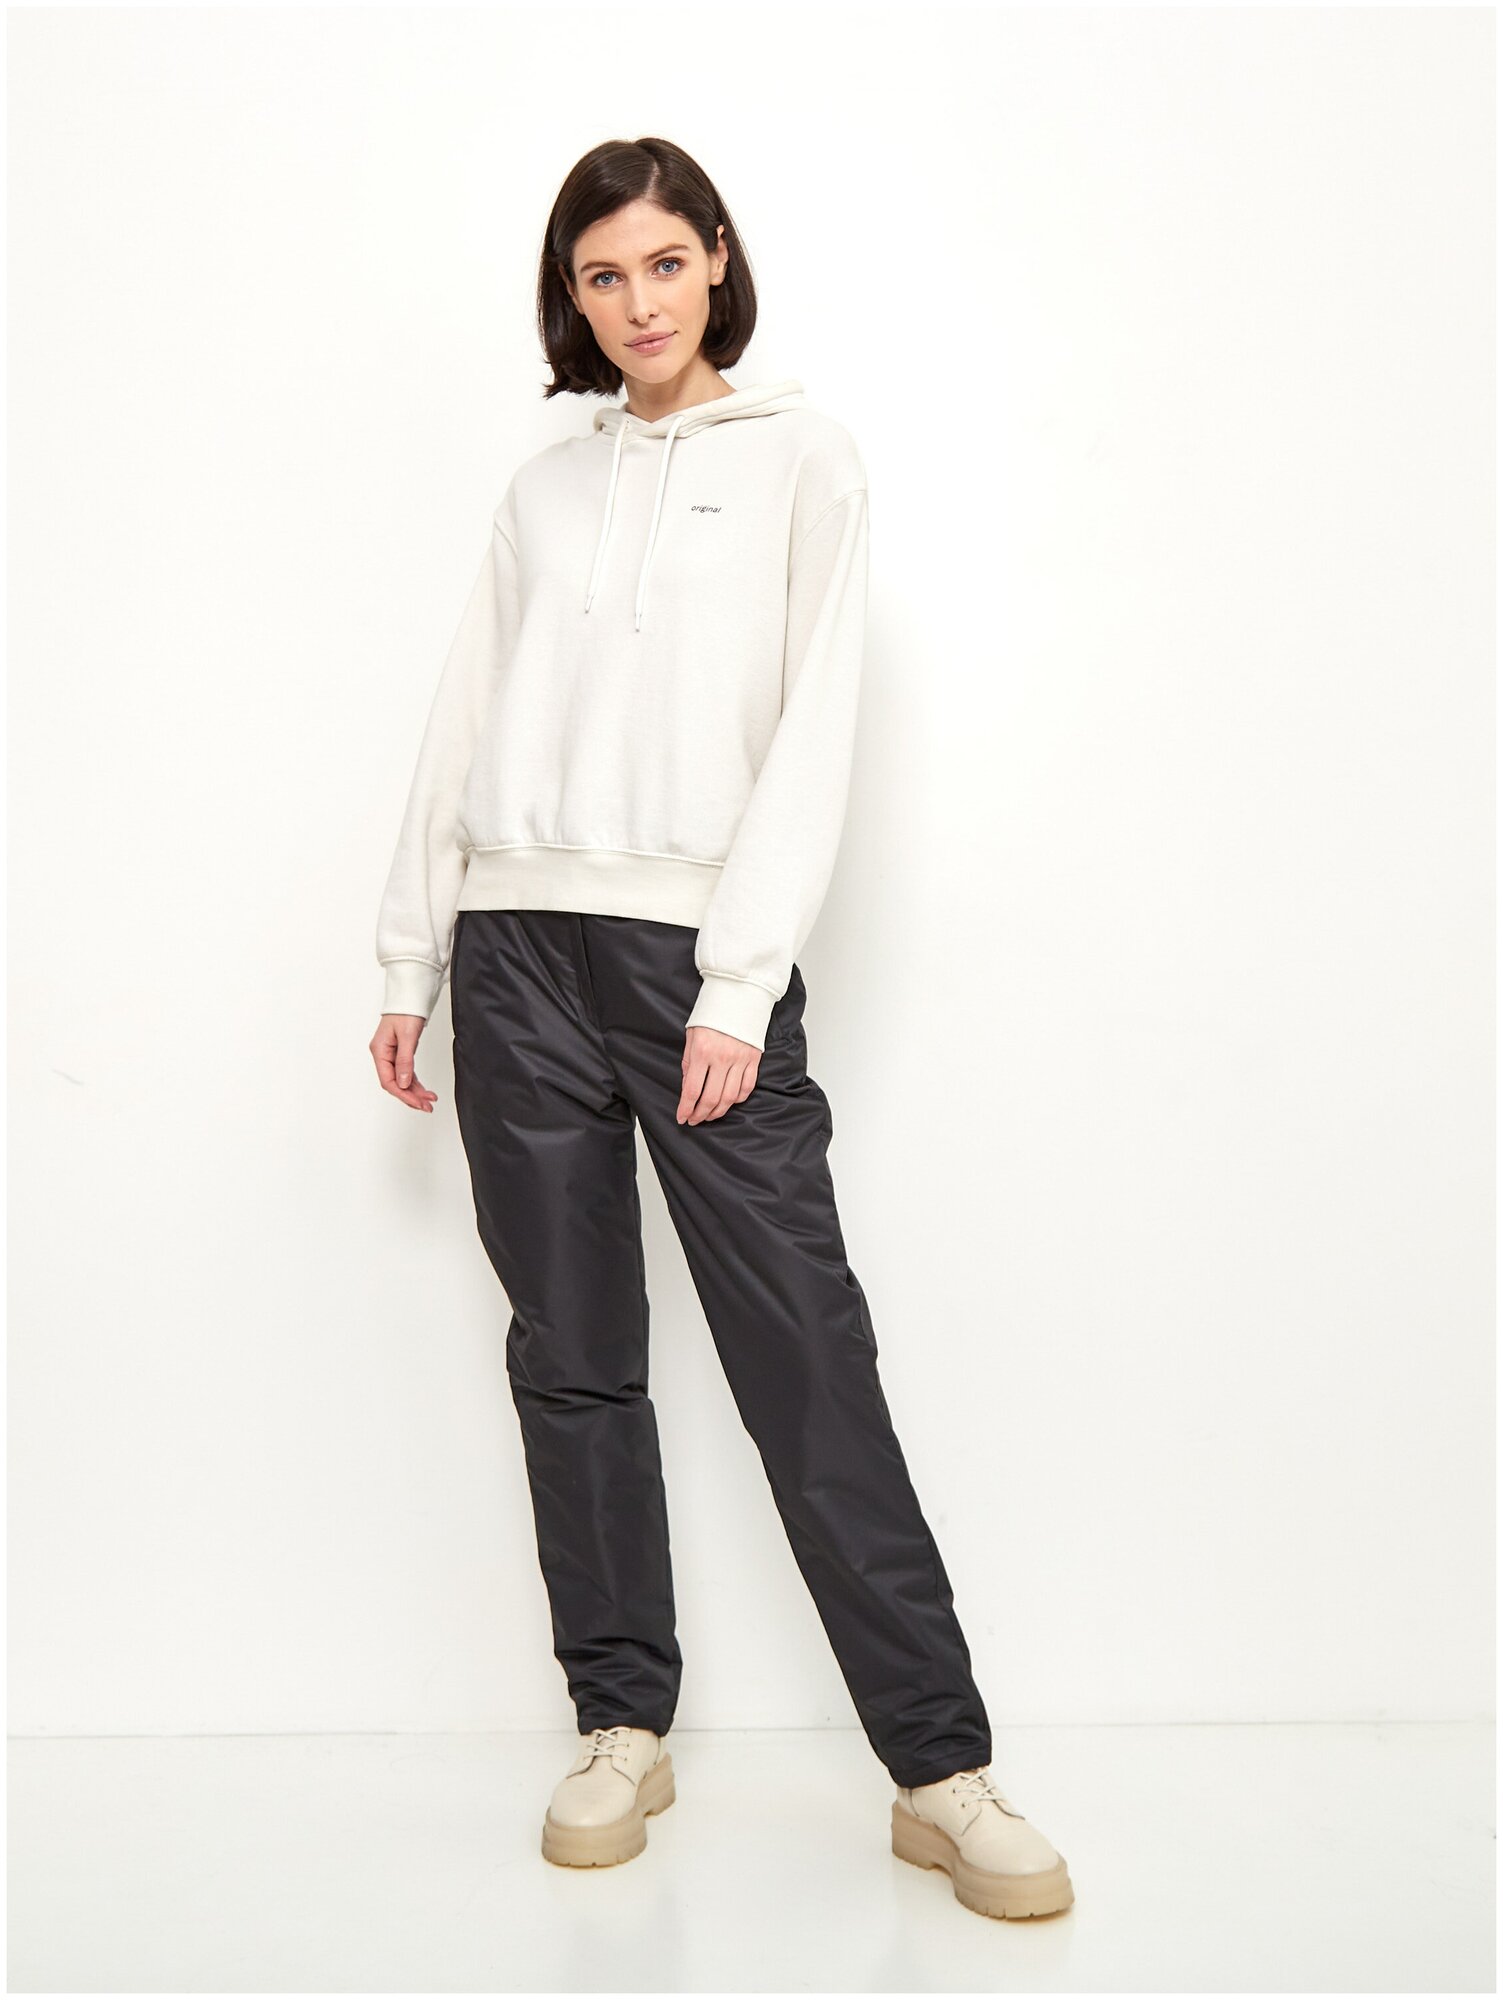 Зимние женские штаны брюки утепленные для прогулок на синтепоне KATRAN Winter мембранная ткань, Черный, Размер: 56-58